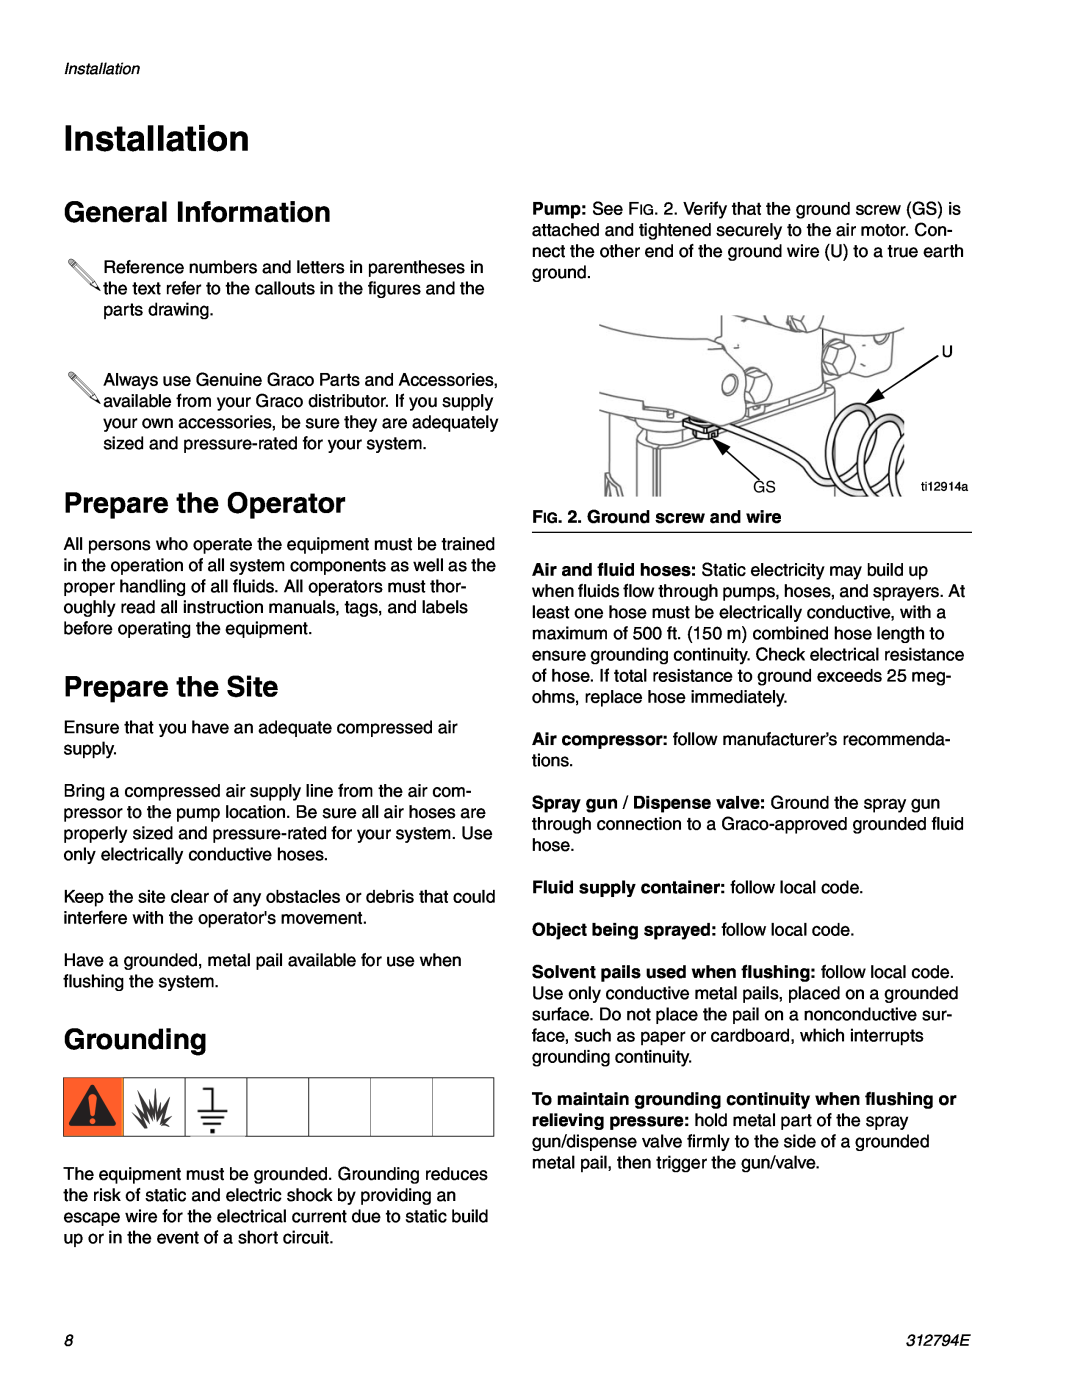 Graco 312794E Installation, General Information, Prepare the Operator, Prepare the Site, Grounding 